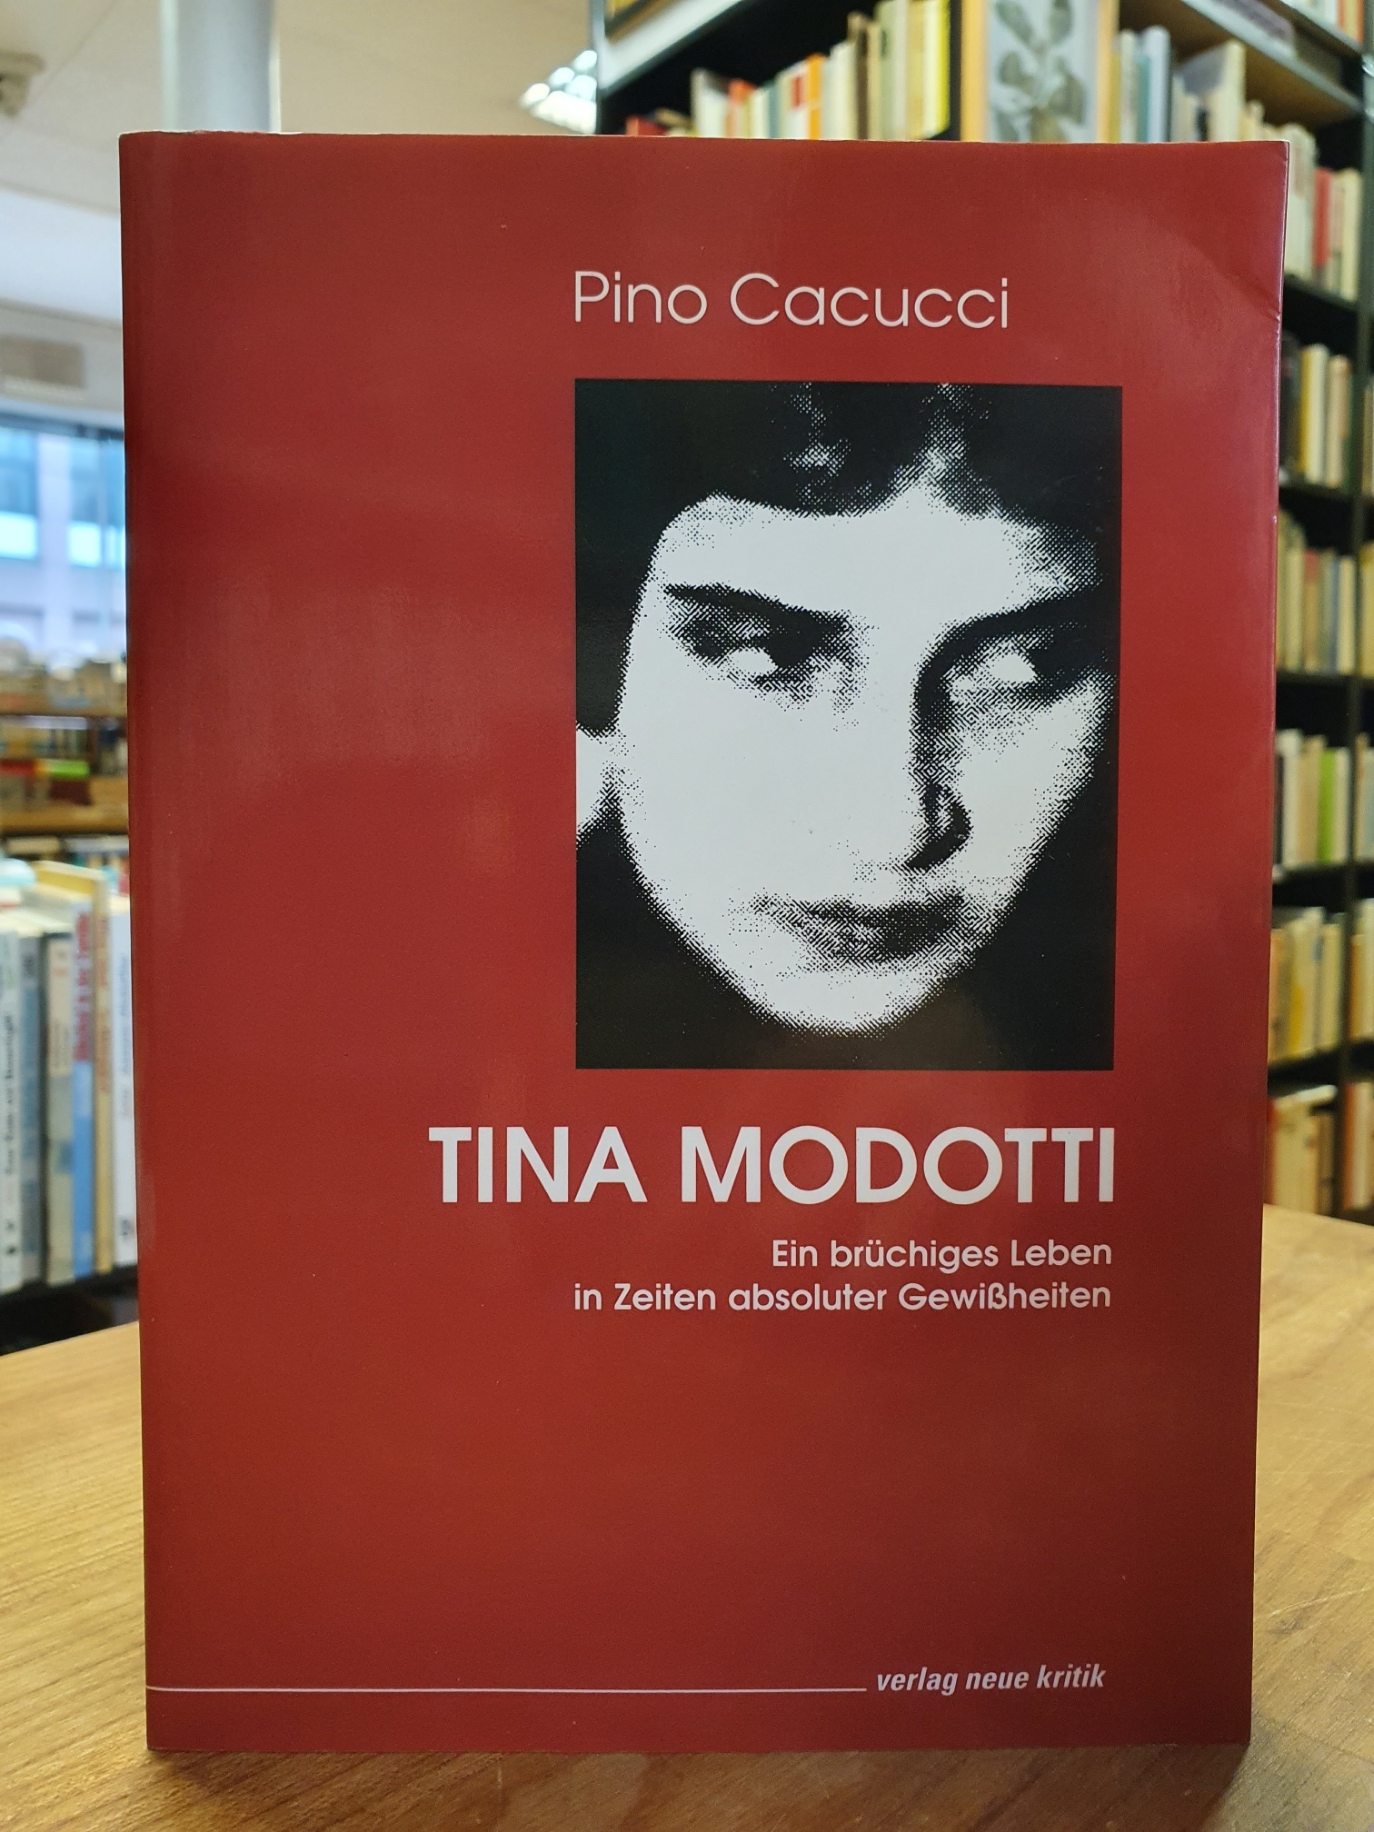 Tina Modotti - Ein brüchiges Leben in Zeiten absoluter Gewissheiten, - Modotti, Tina / Cacucci, Pino,